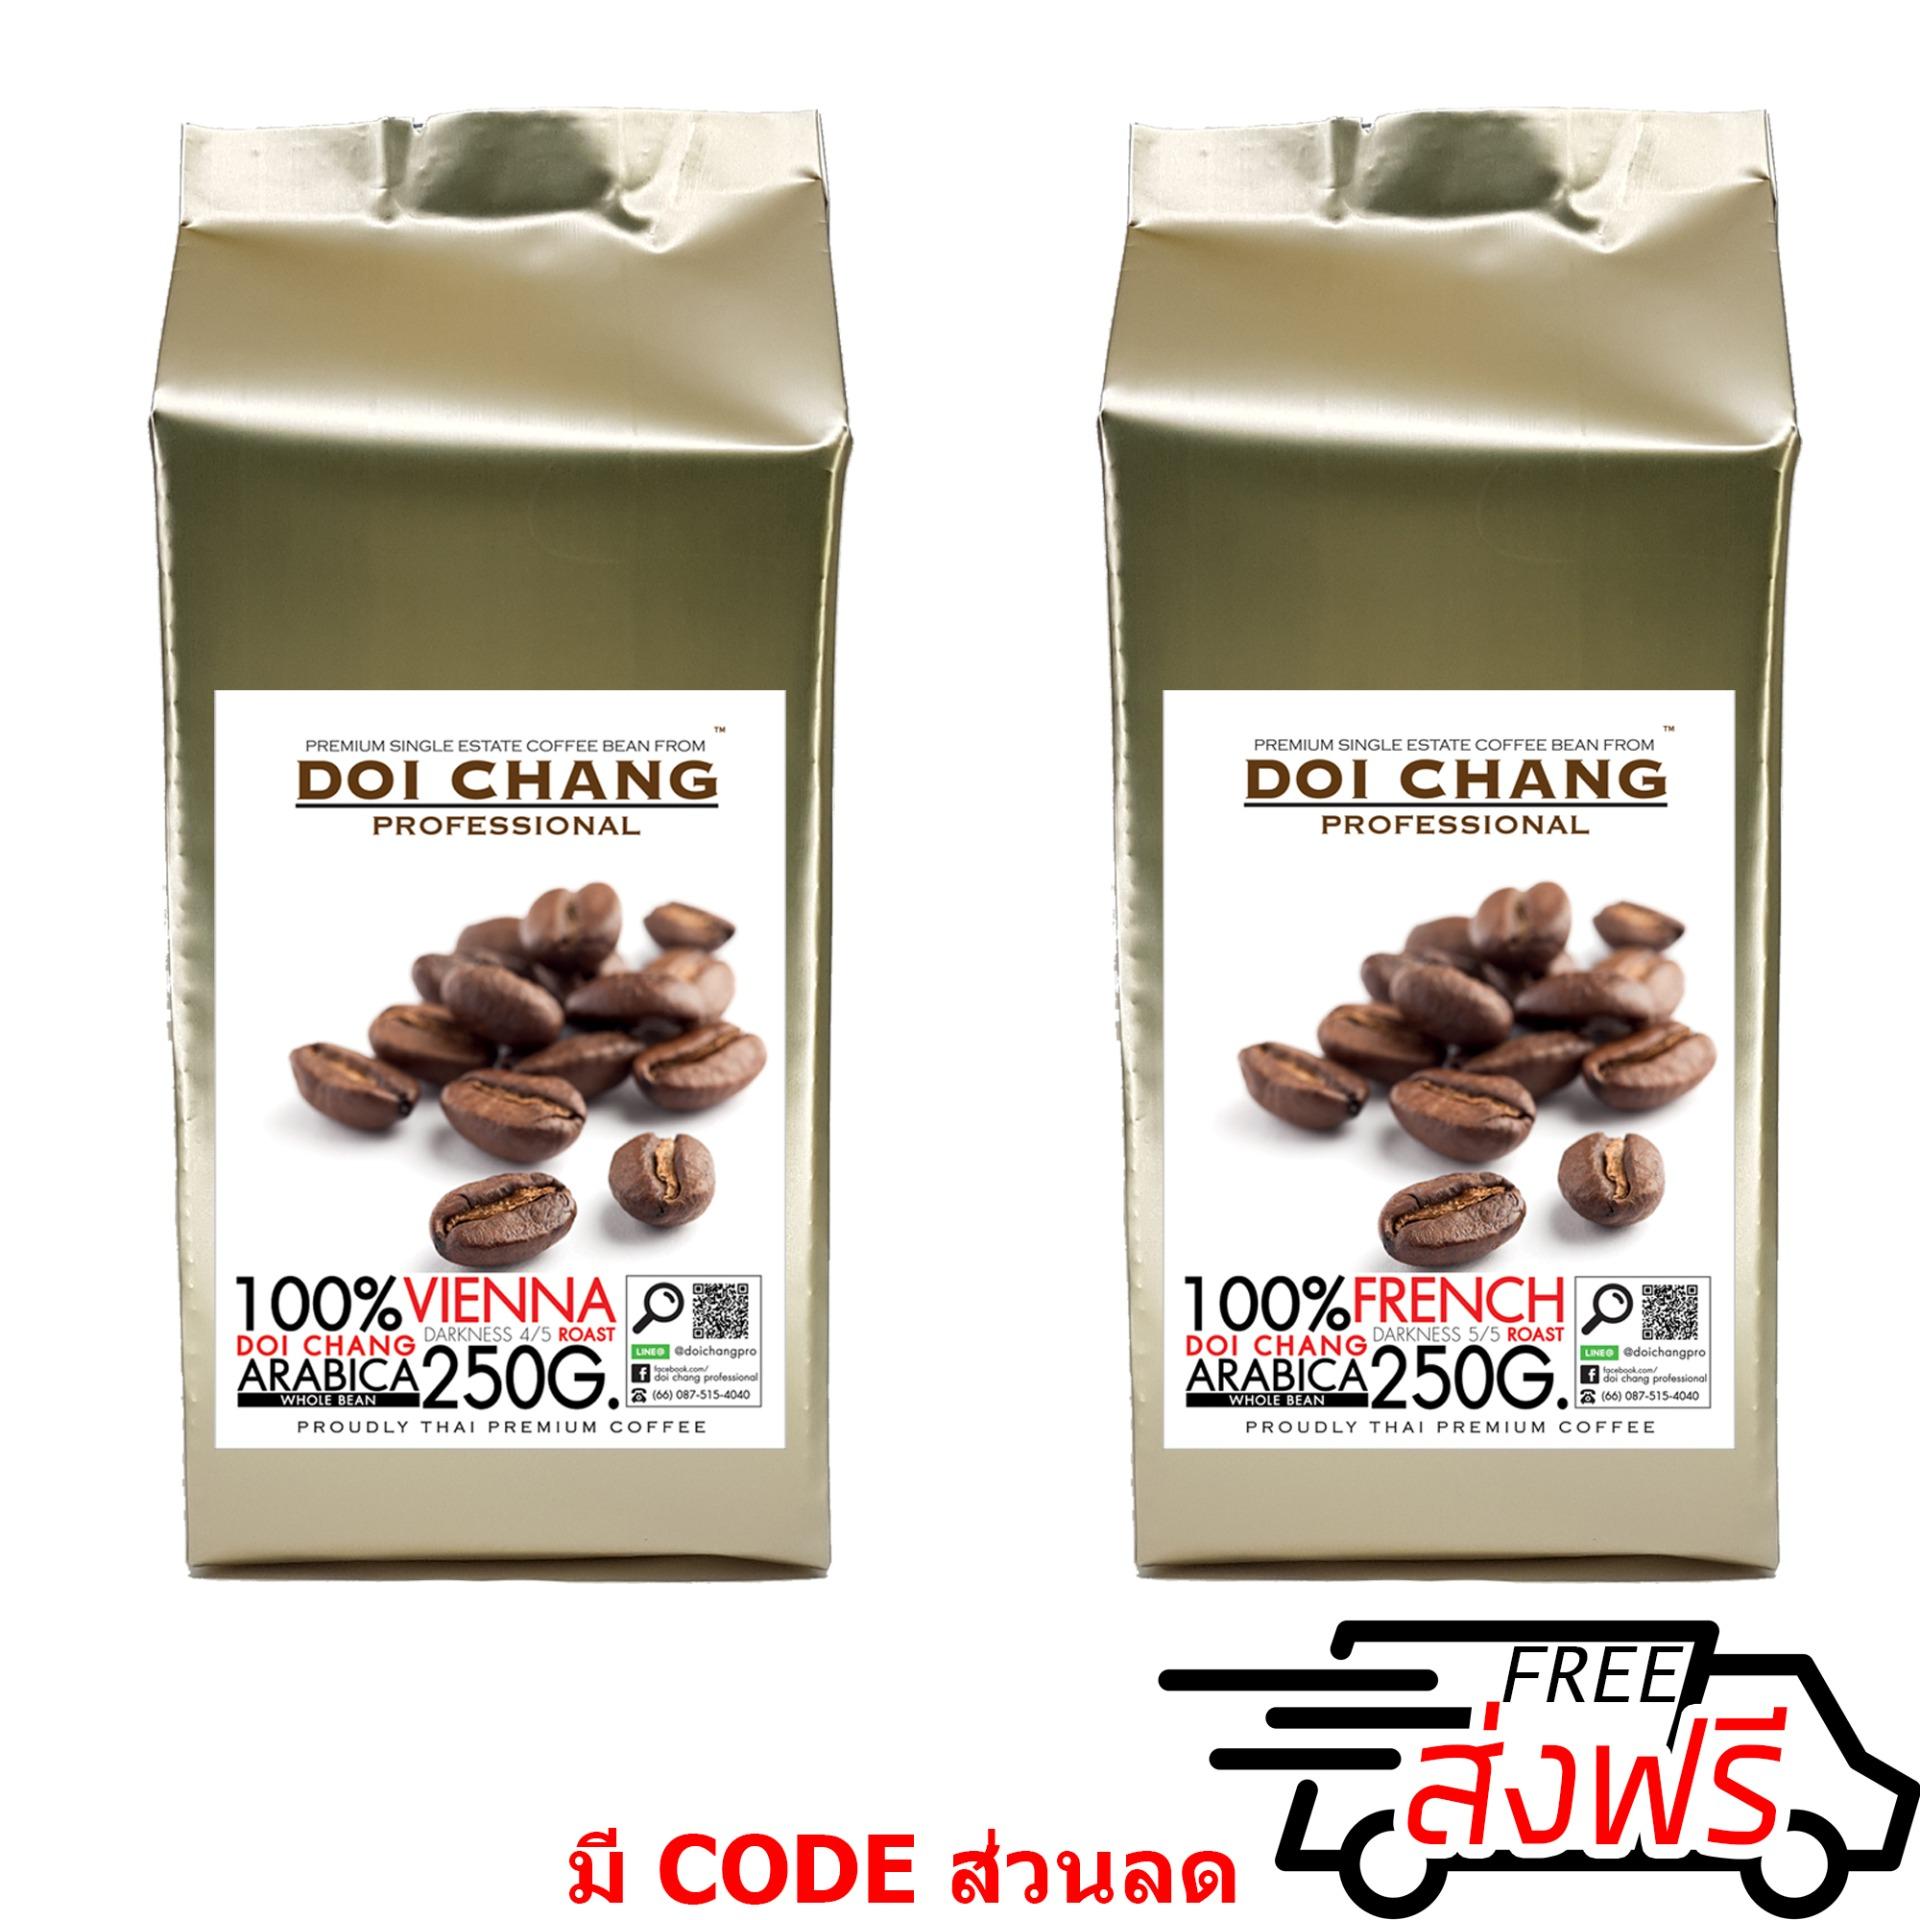 กาแฟอราบิก้า ดอยช้าง คั่วกลาง 1 ถุง+คั่วเข้ม 1 ถุง Vienna 1 bag + French 1 bag รวม 500 g.(2x250g.)  Doi Chang Professional Roasted Coffee Whole Bean เมล็ดกาแฟ จาก เมล็ดกาแฟดอยช้าง (กาแฟสด)